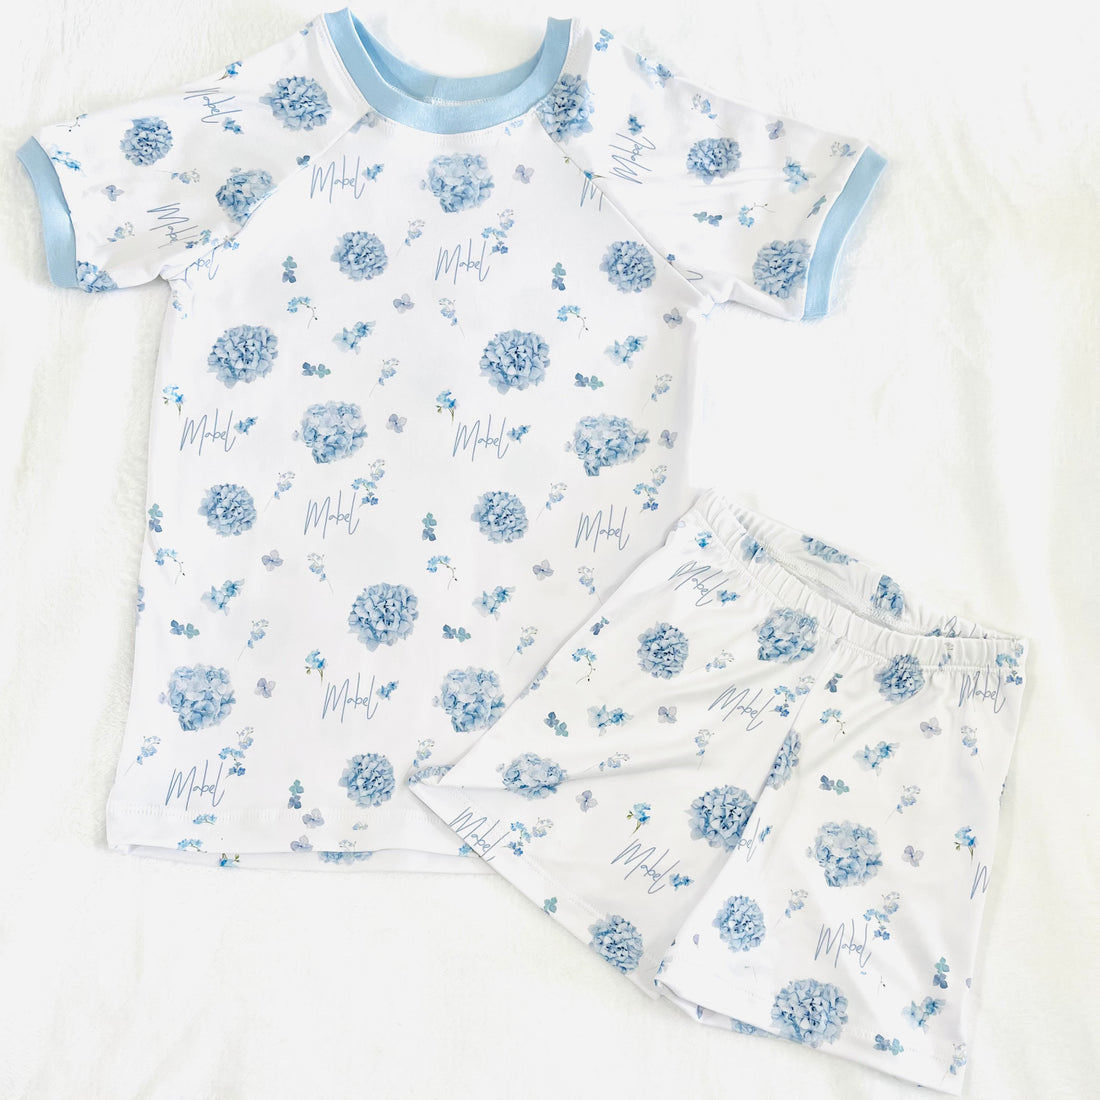 Blue Floral Pajamas